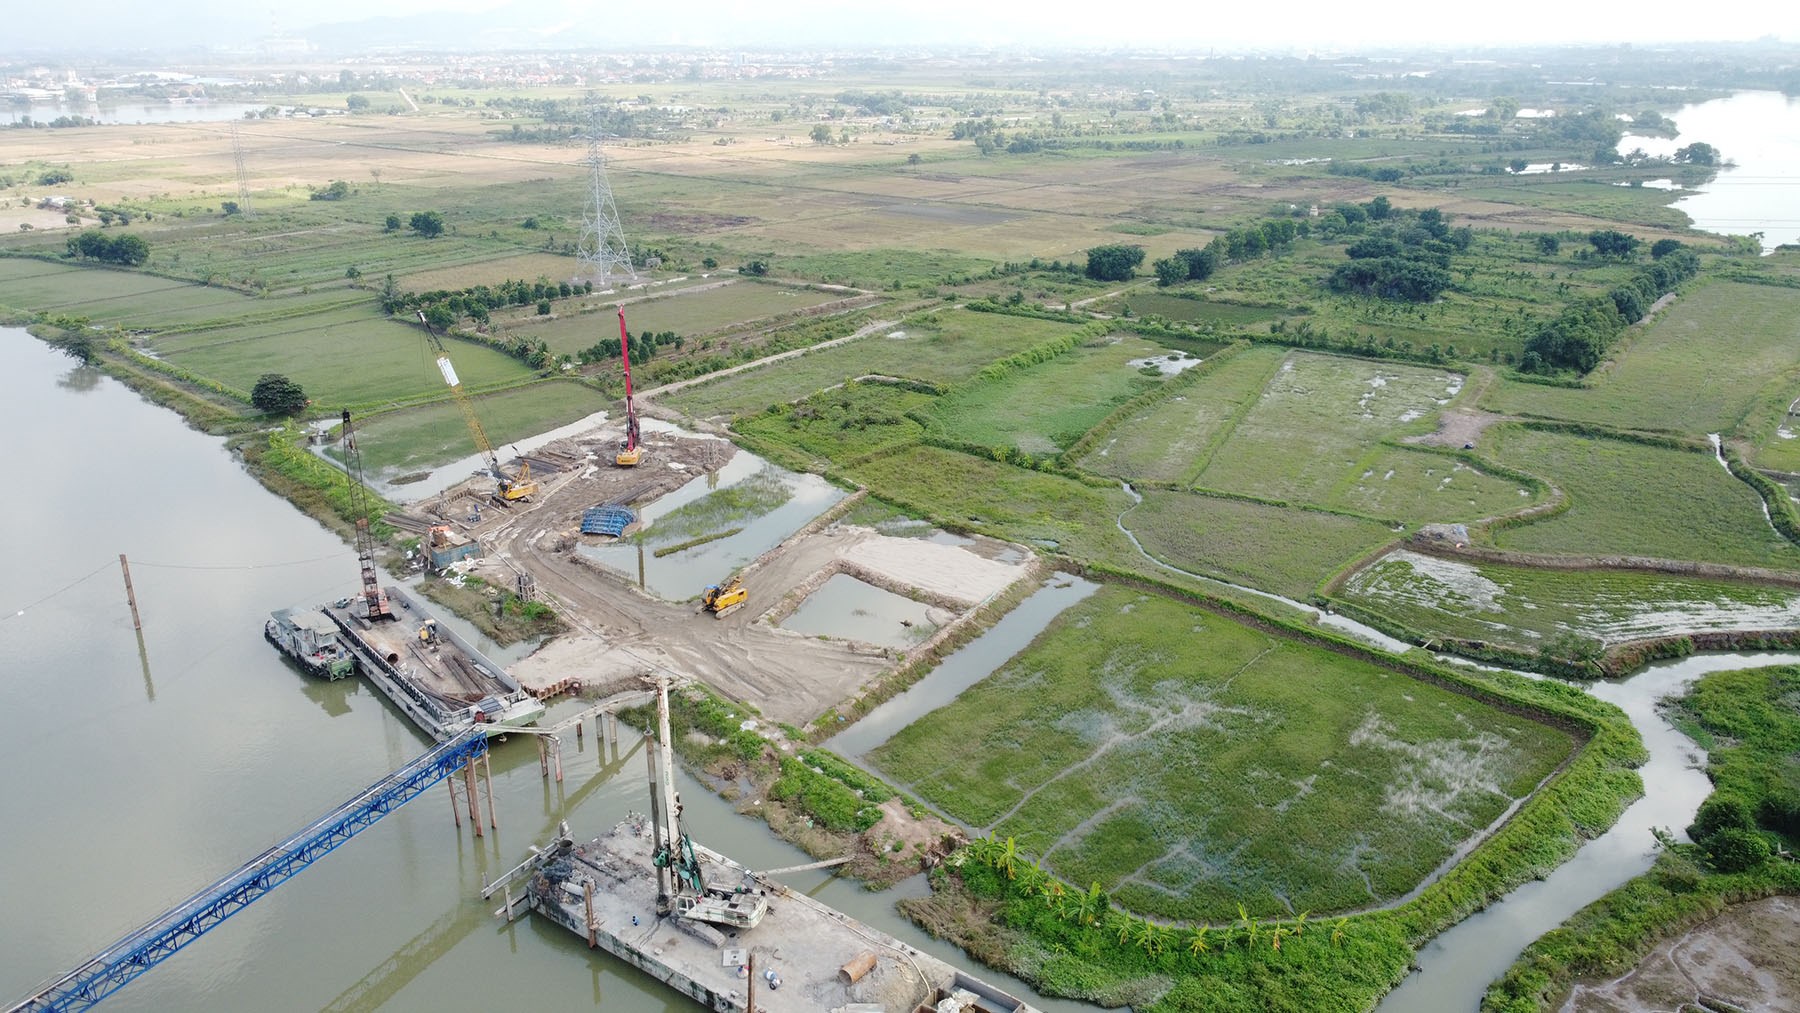 Hình ảnh cầu vượt sông Cầm ở thị xã Đông Triều, Quảng Ninh đang xây dựng